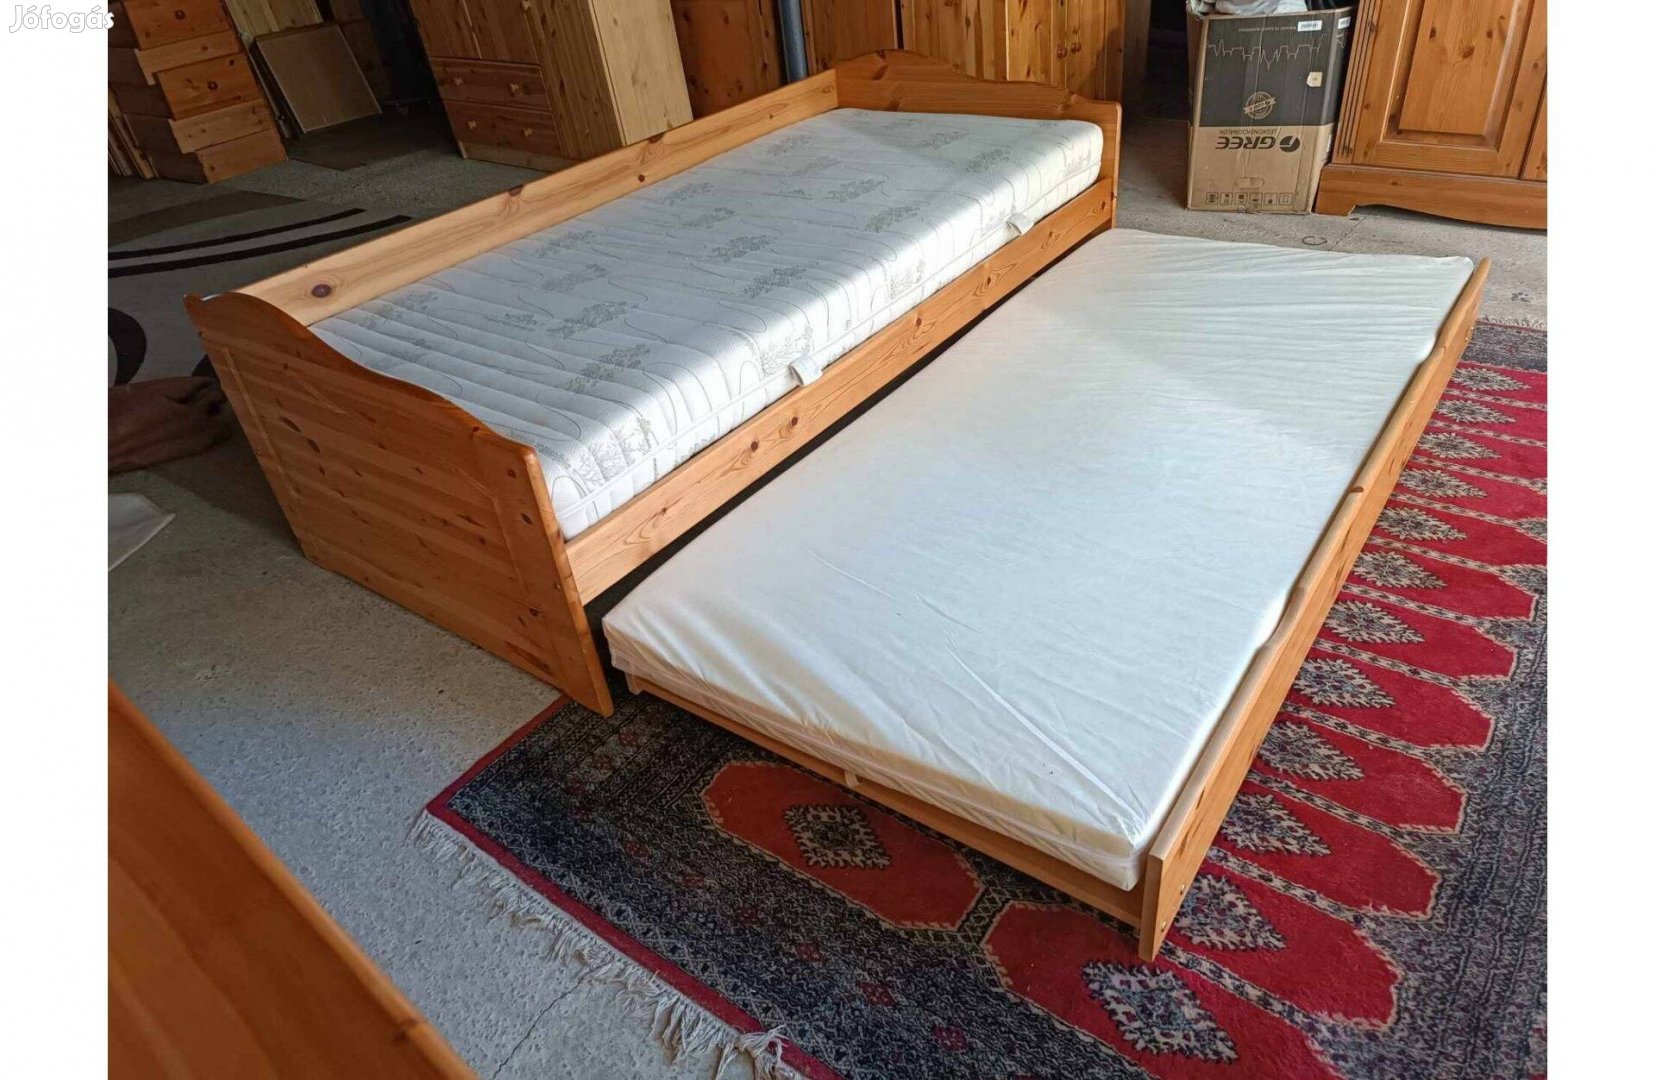 Fenyő ágy vendég ágy a115 ingyen szállítás 50 km ig